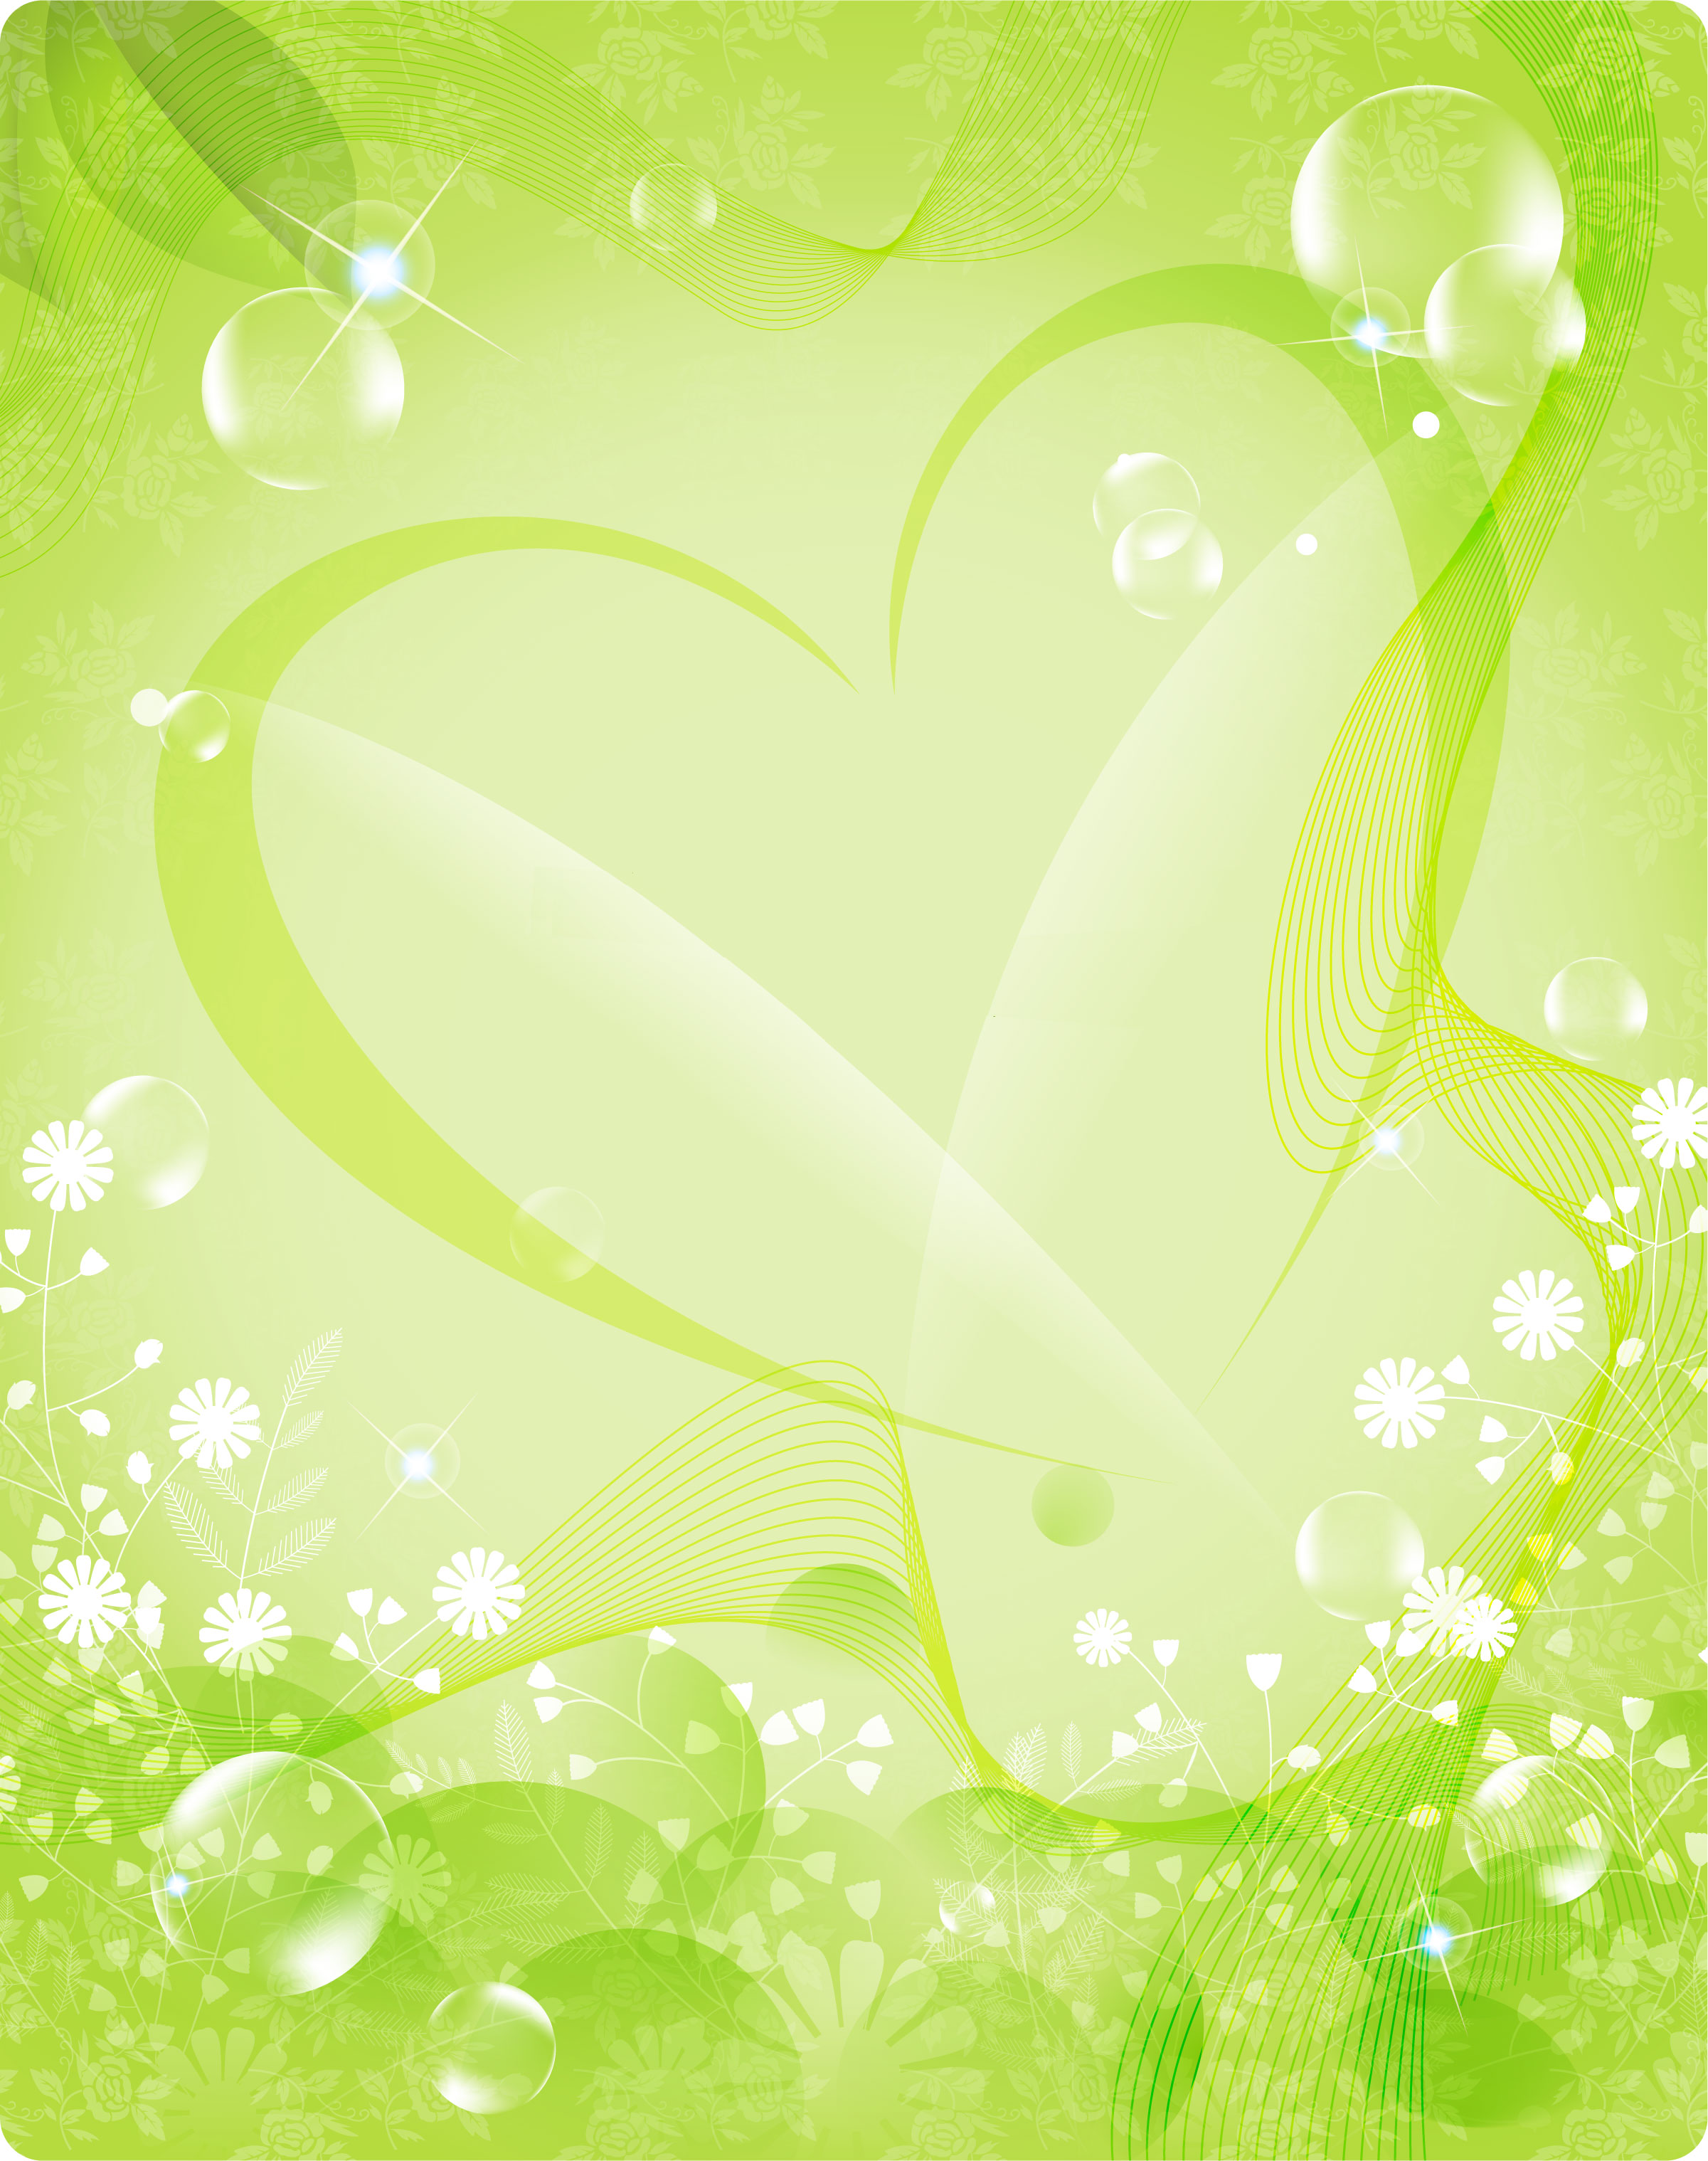 緑色の花のイラスト フリー素材 背景 壁紙no 1 緑 ハート型 光彩